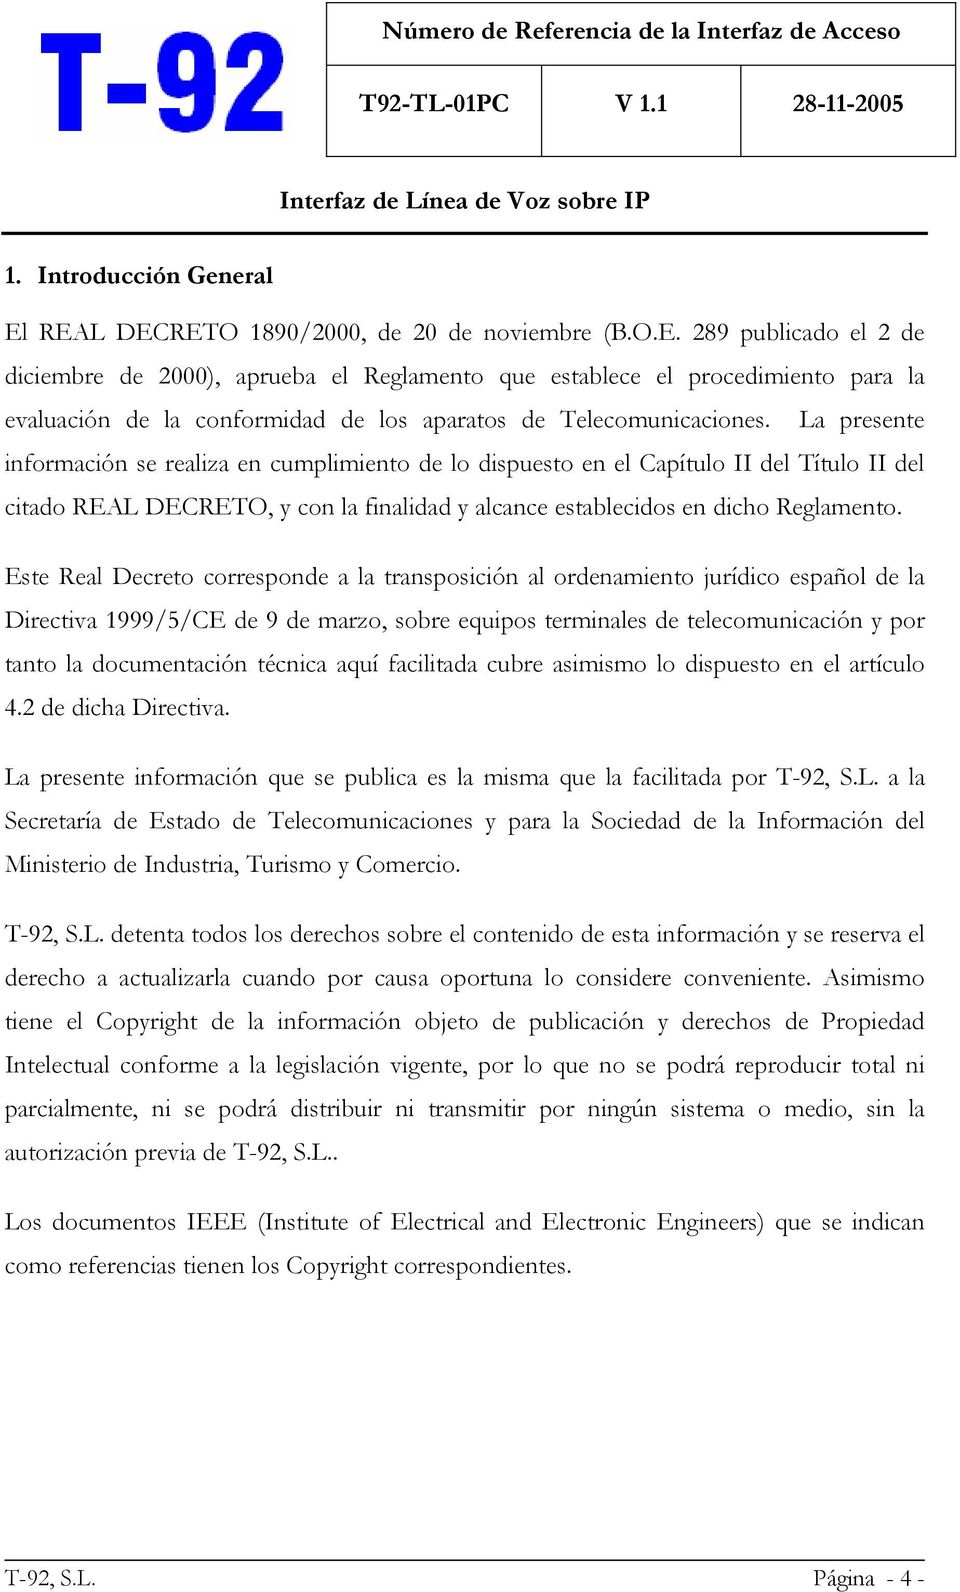 Este Real Decreto corresponde a la transposición al ordenamiento jurídico español de la Directiva 1999/5/CE de 9 de marzo, sobre equipos terminales de telecomunicación y por tanto la documentación